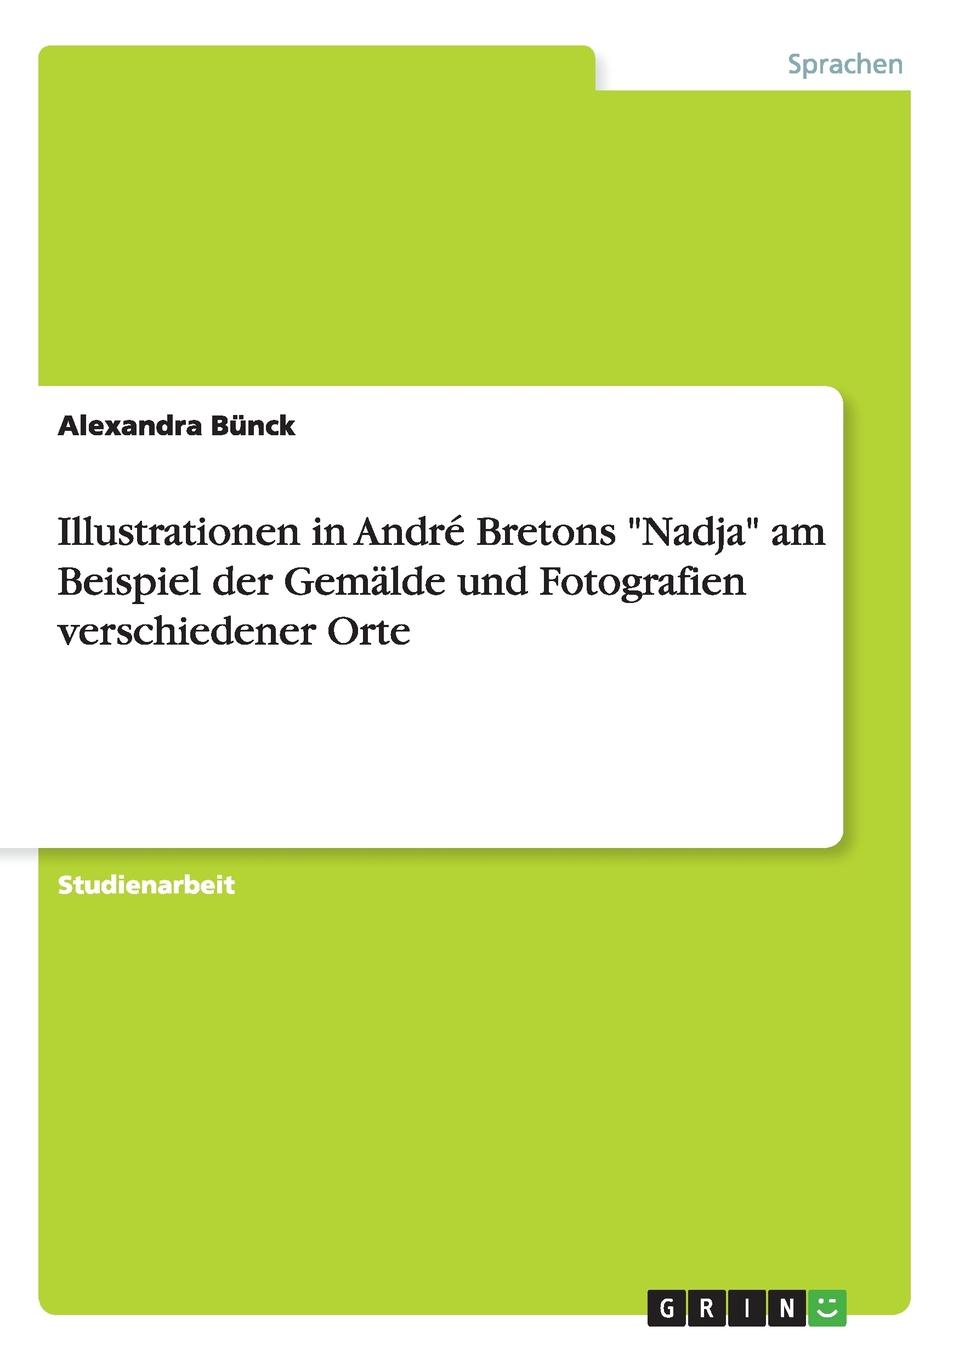 Alexandra Bünck Illustrationen in Andre Bretons 